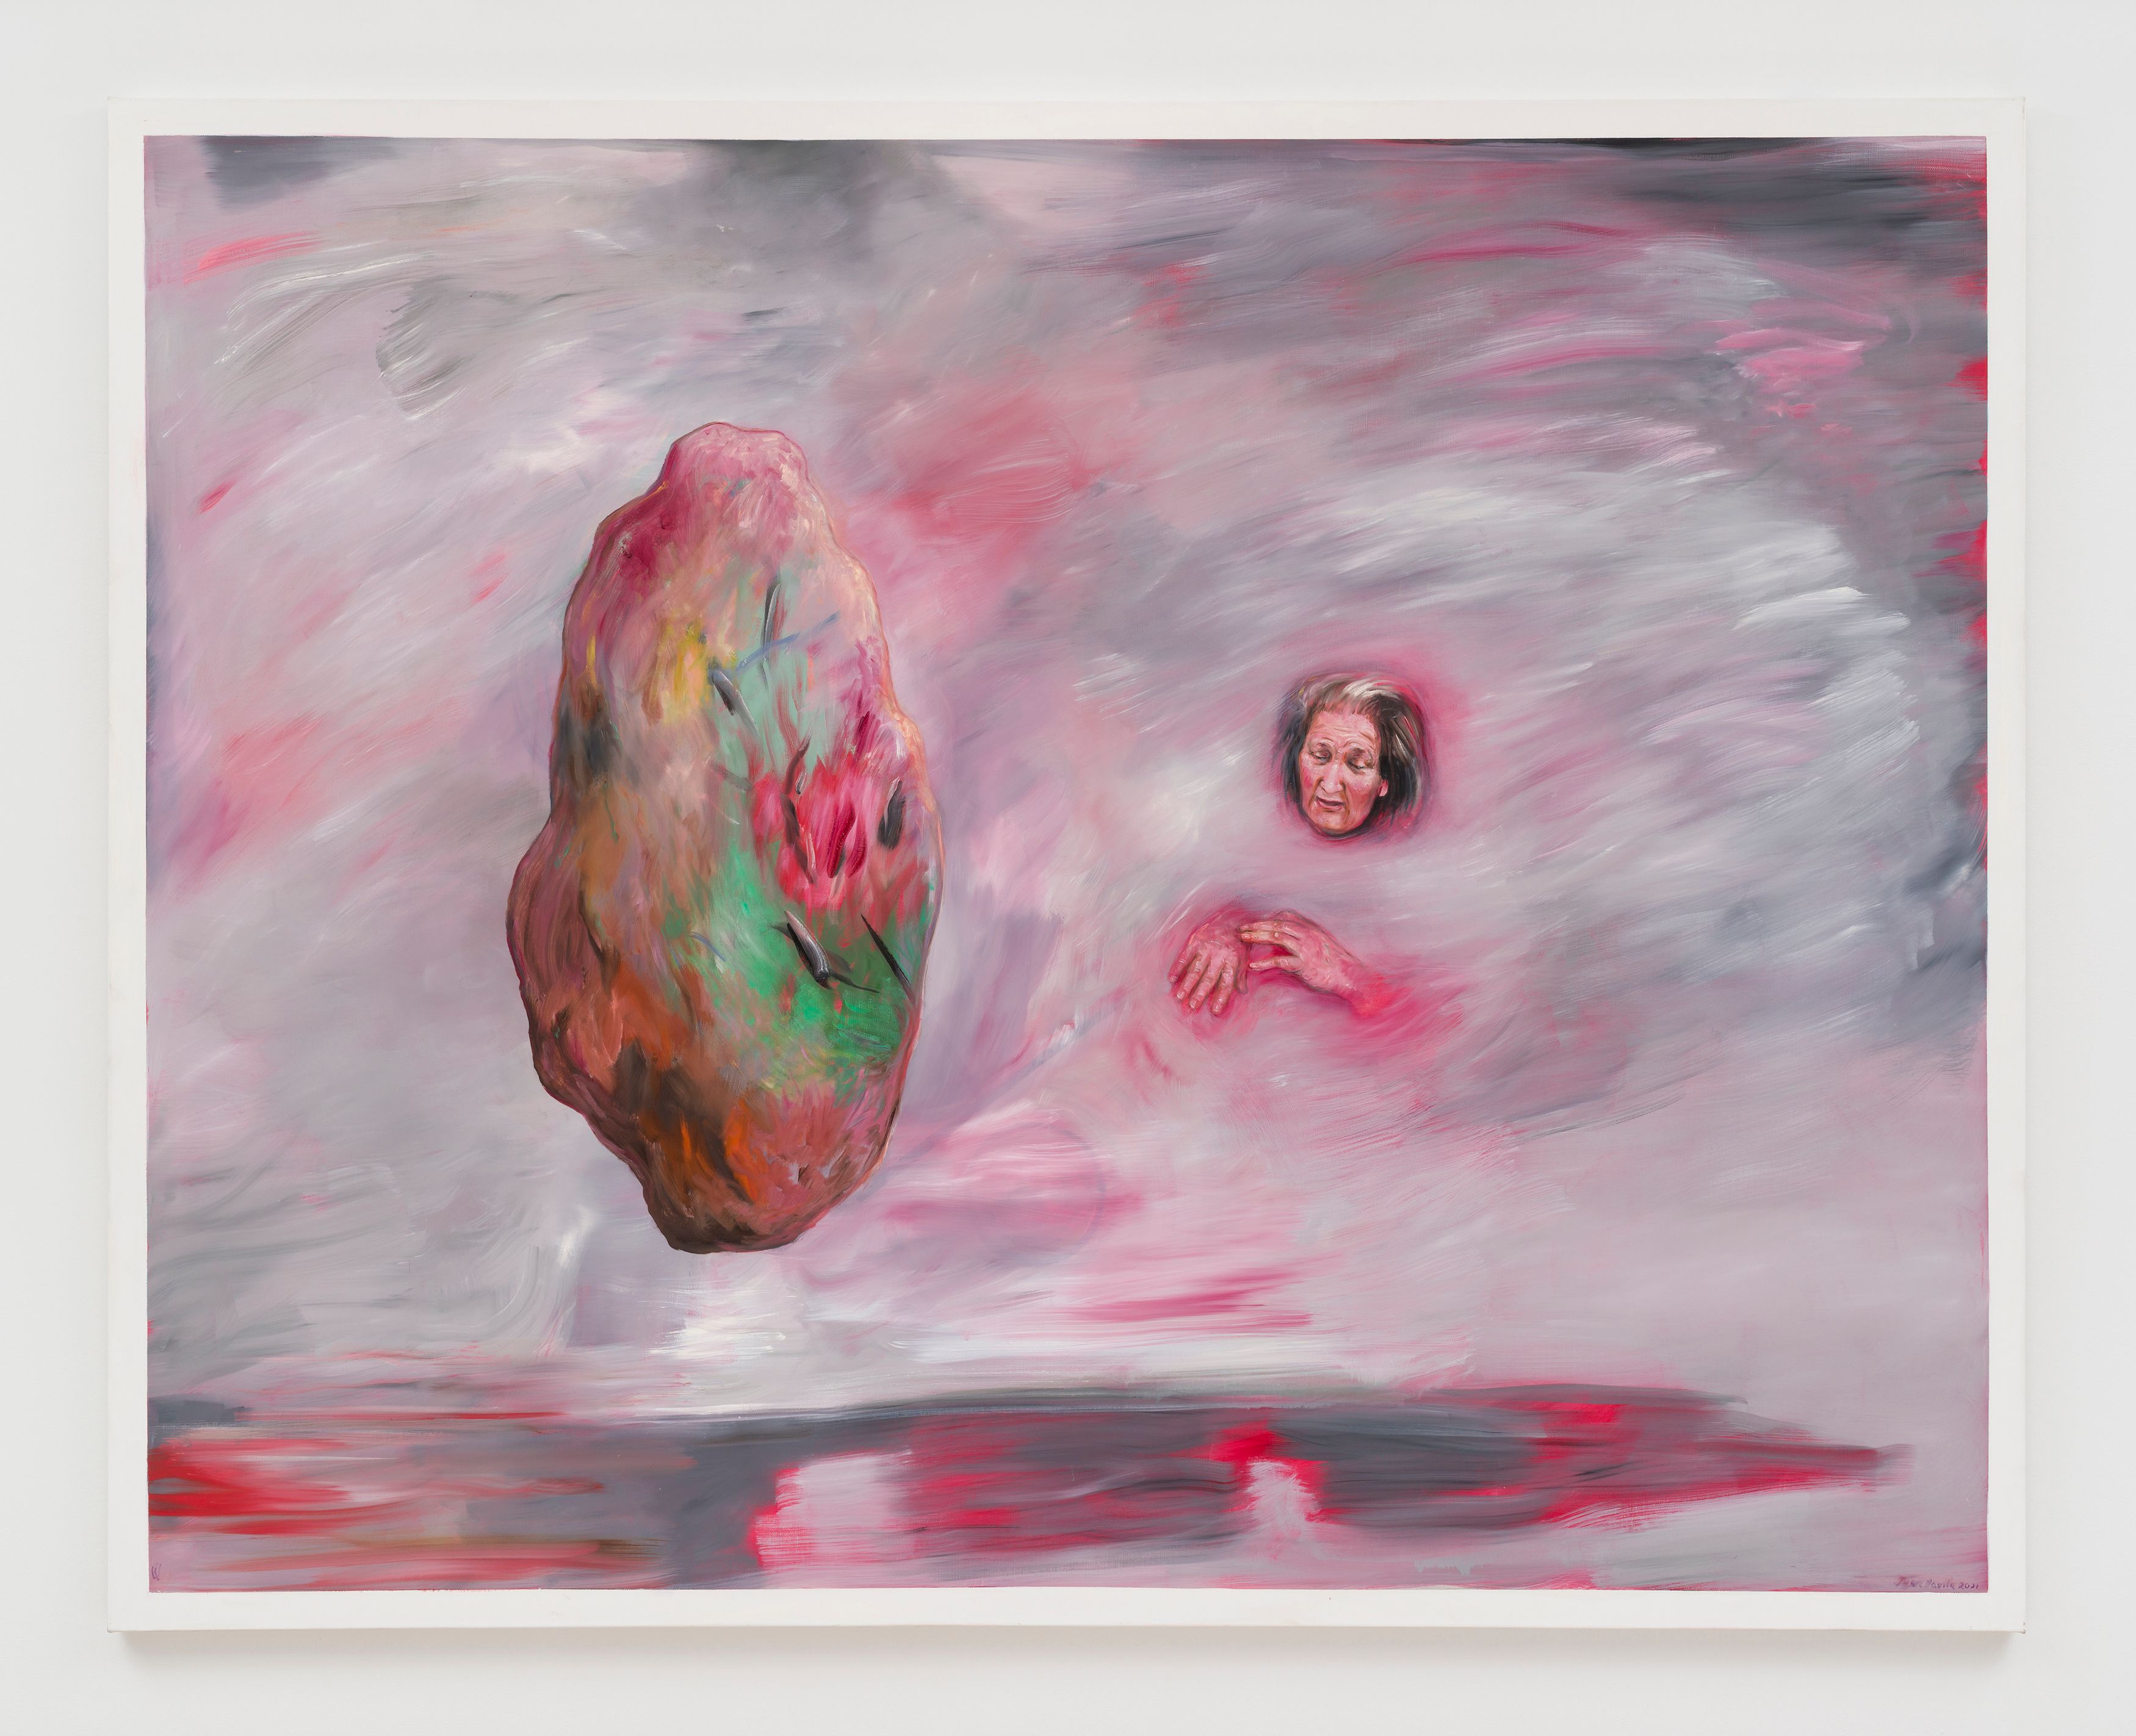 Juan Davila, Machi 3, 2021, oil on canvas, 78 3/4 x 98 1/4 in. (200 x 249.5 cm)